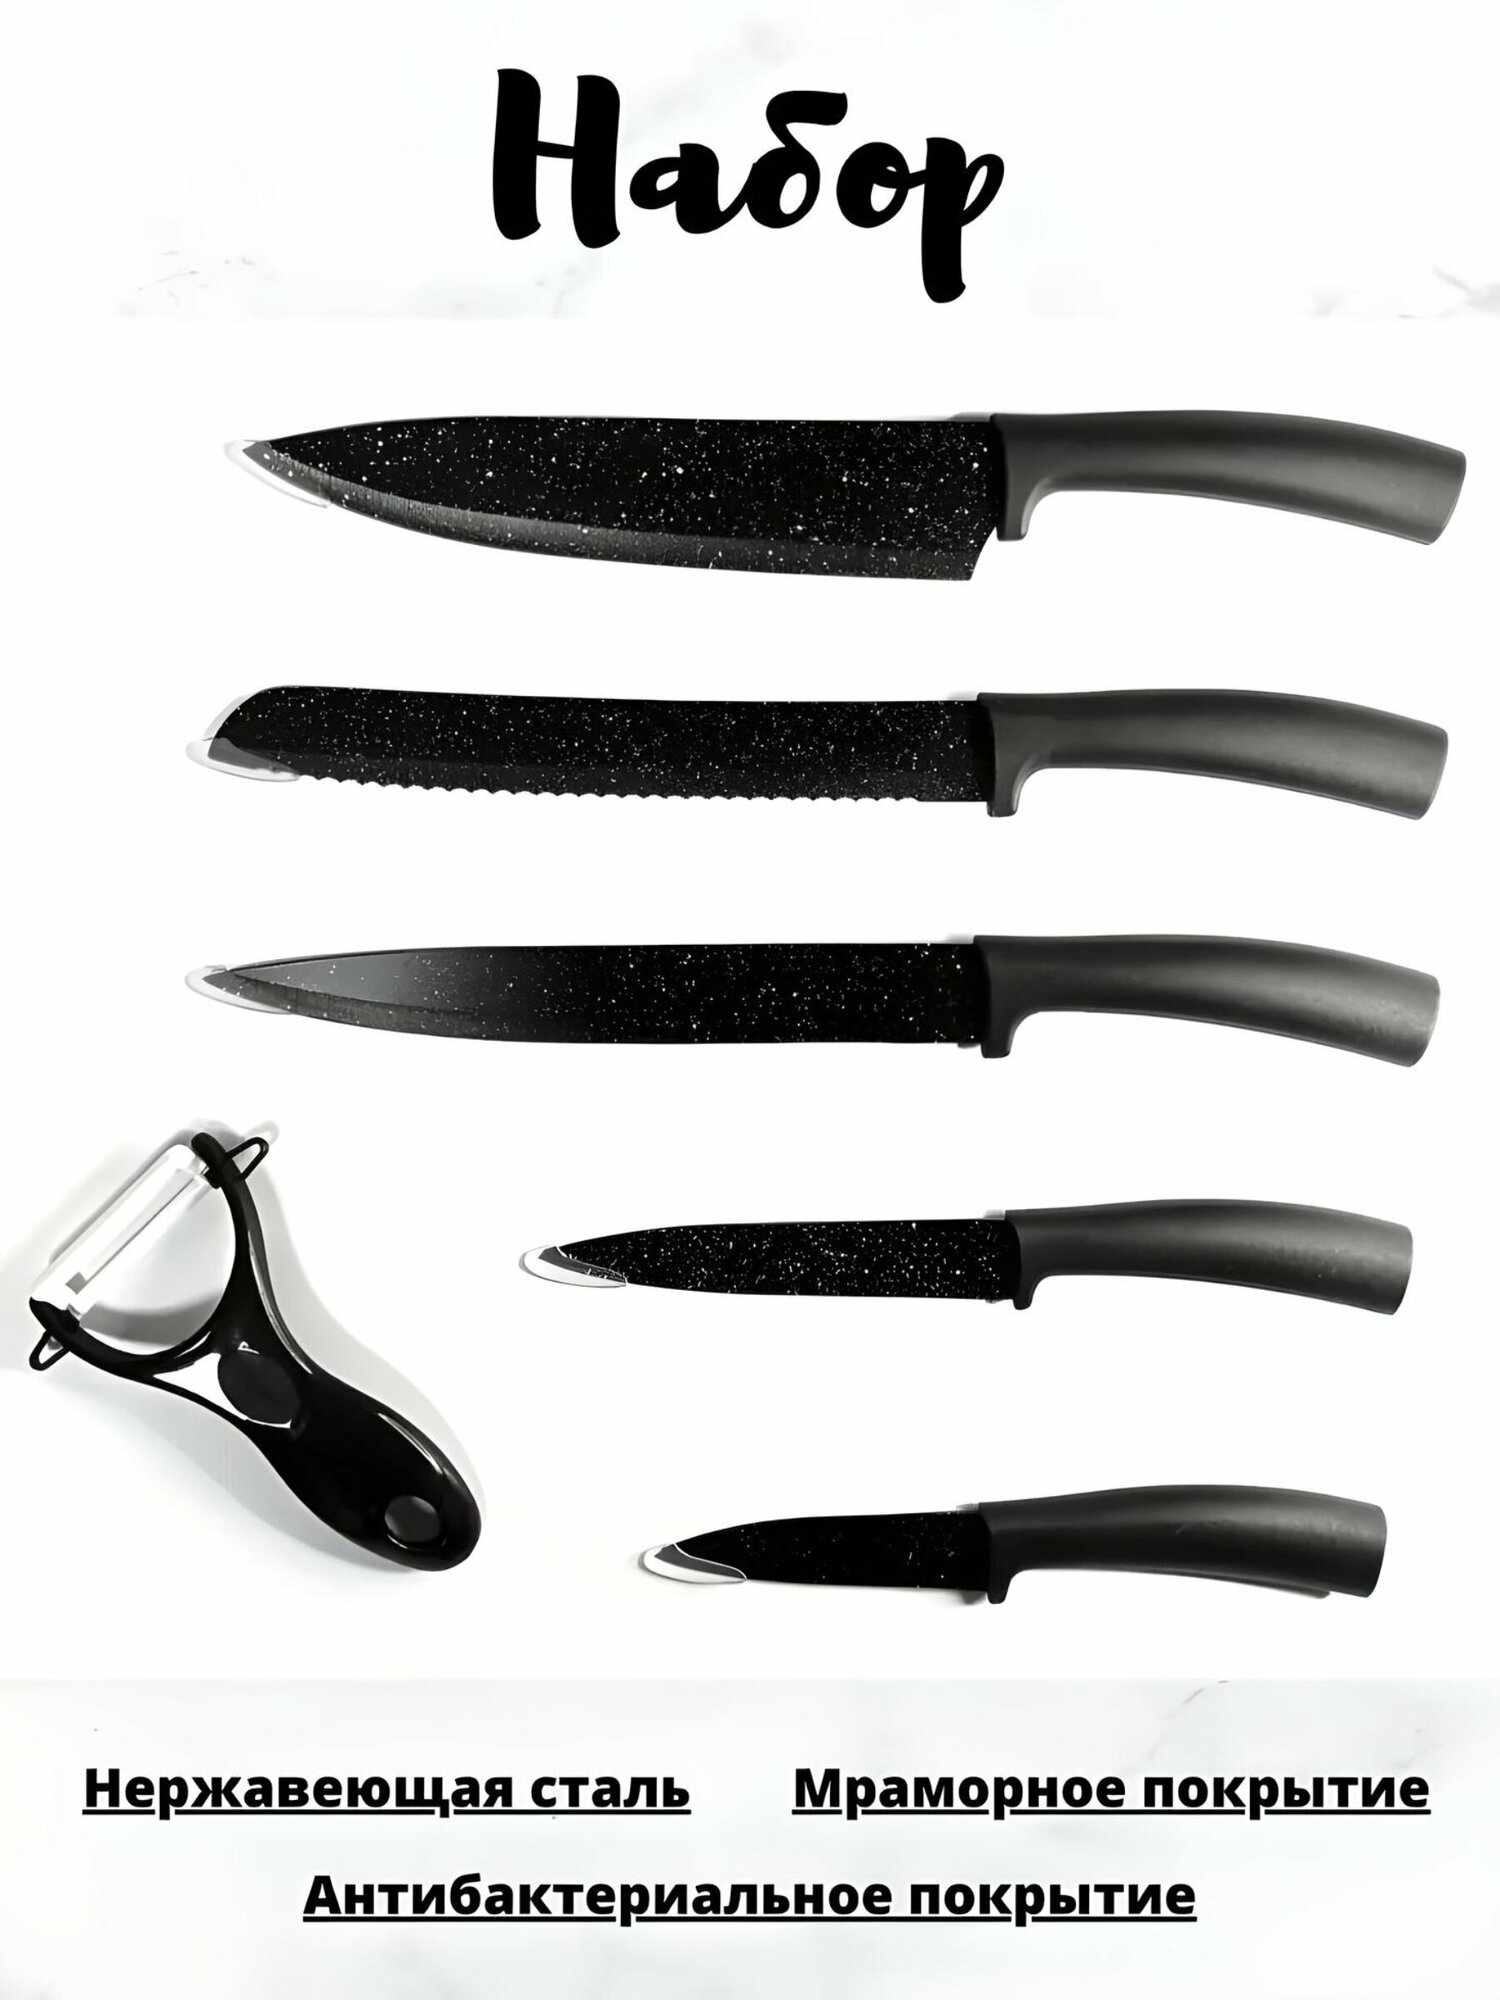 Набор кухонных ножей, кухонные ножи, кухонные ножи для дома, 6 предметов, антибактериальное покрытие, овощечистка, 5 ножей, черный